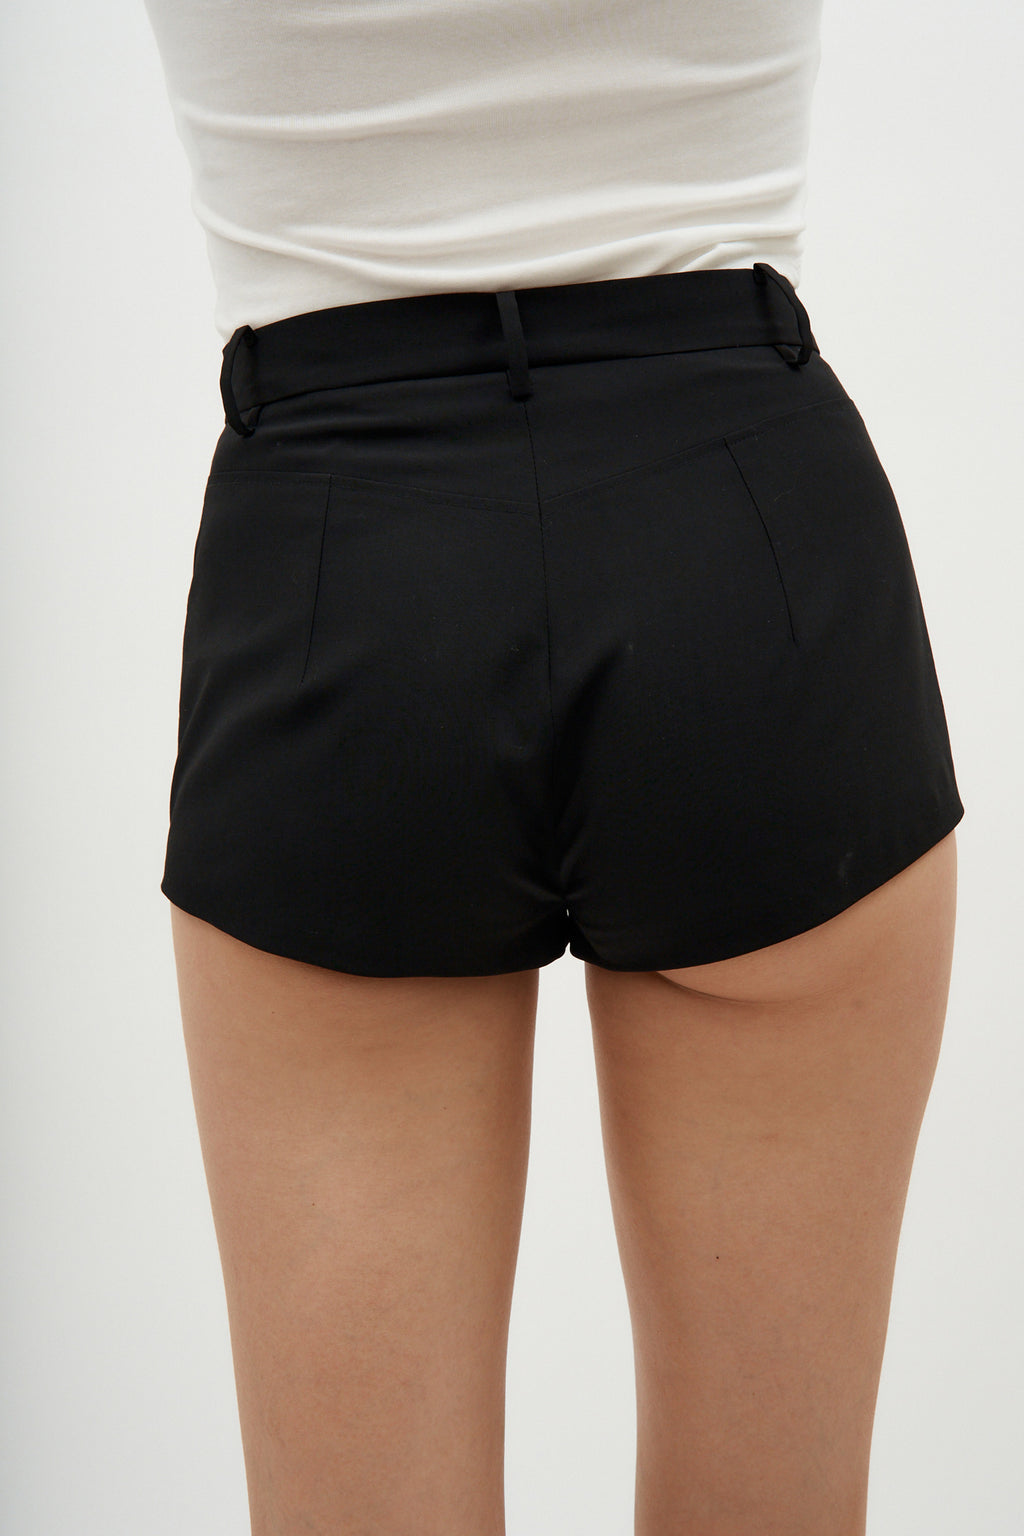 Tailored Black Mini Shorts